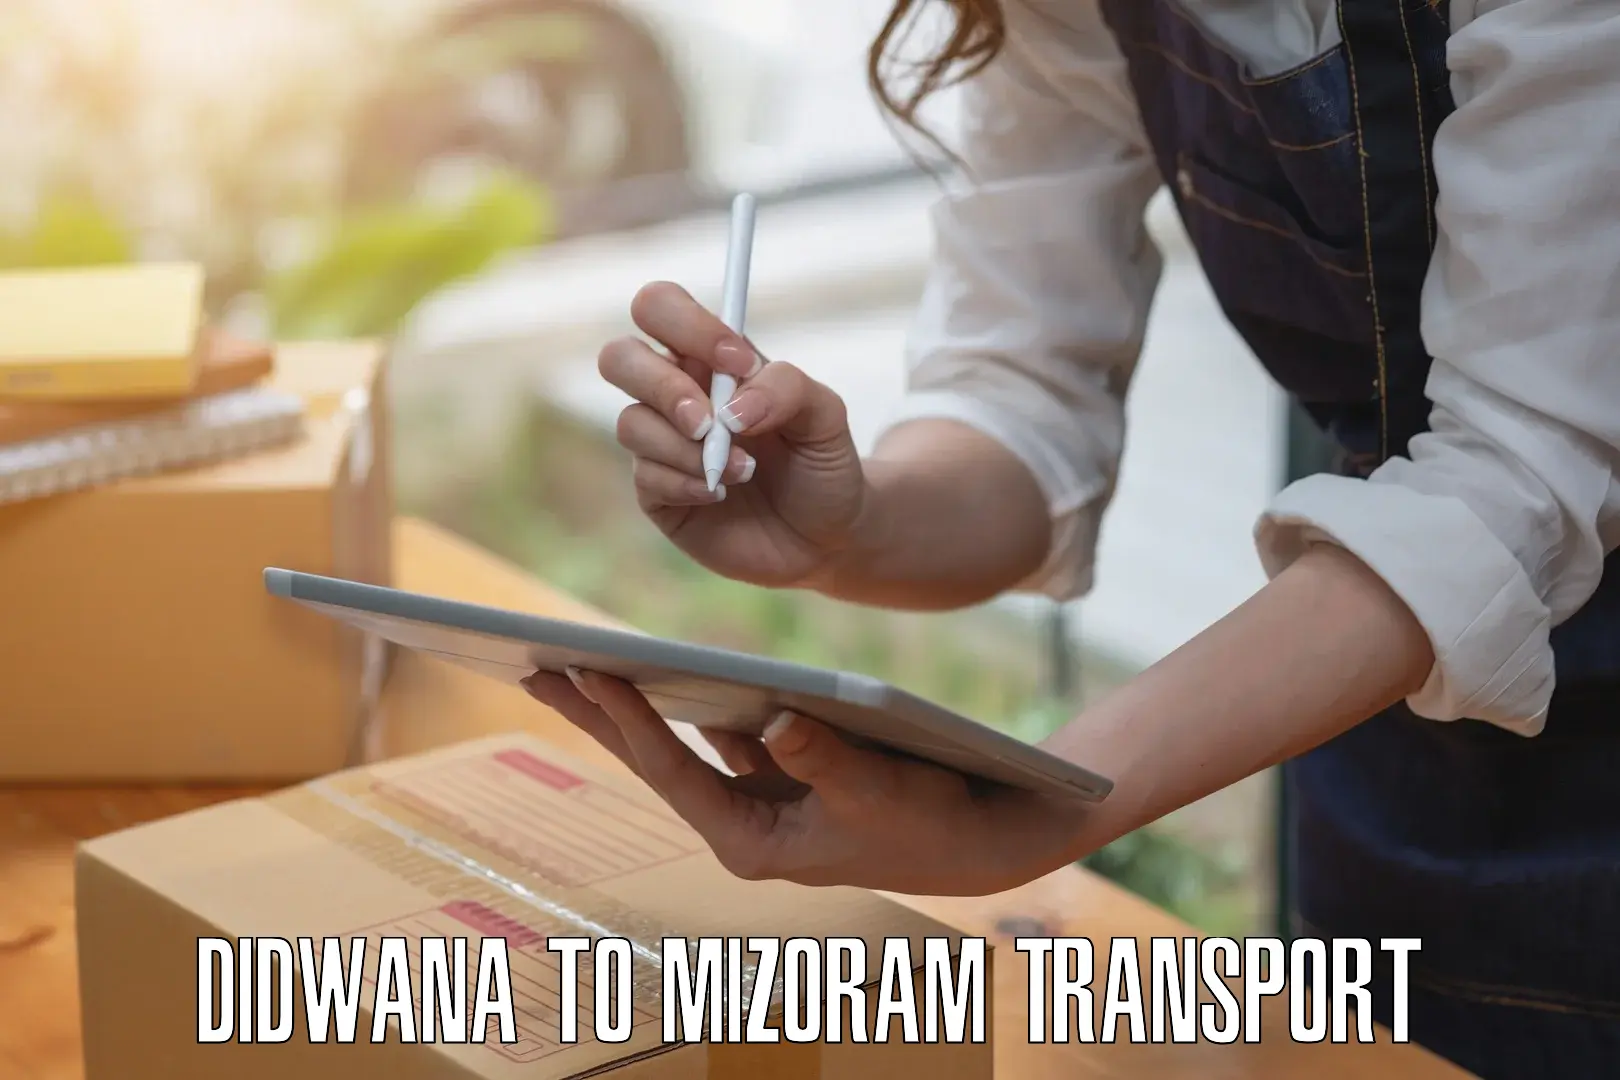 Nearest transport service in Didwana to Mizoram